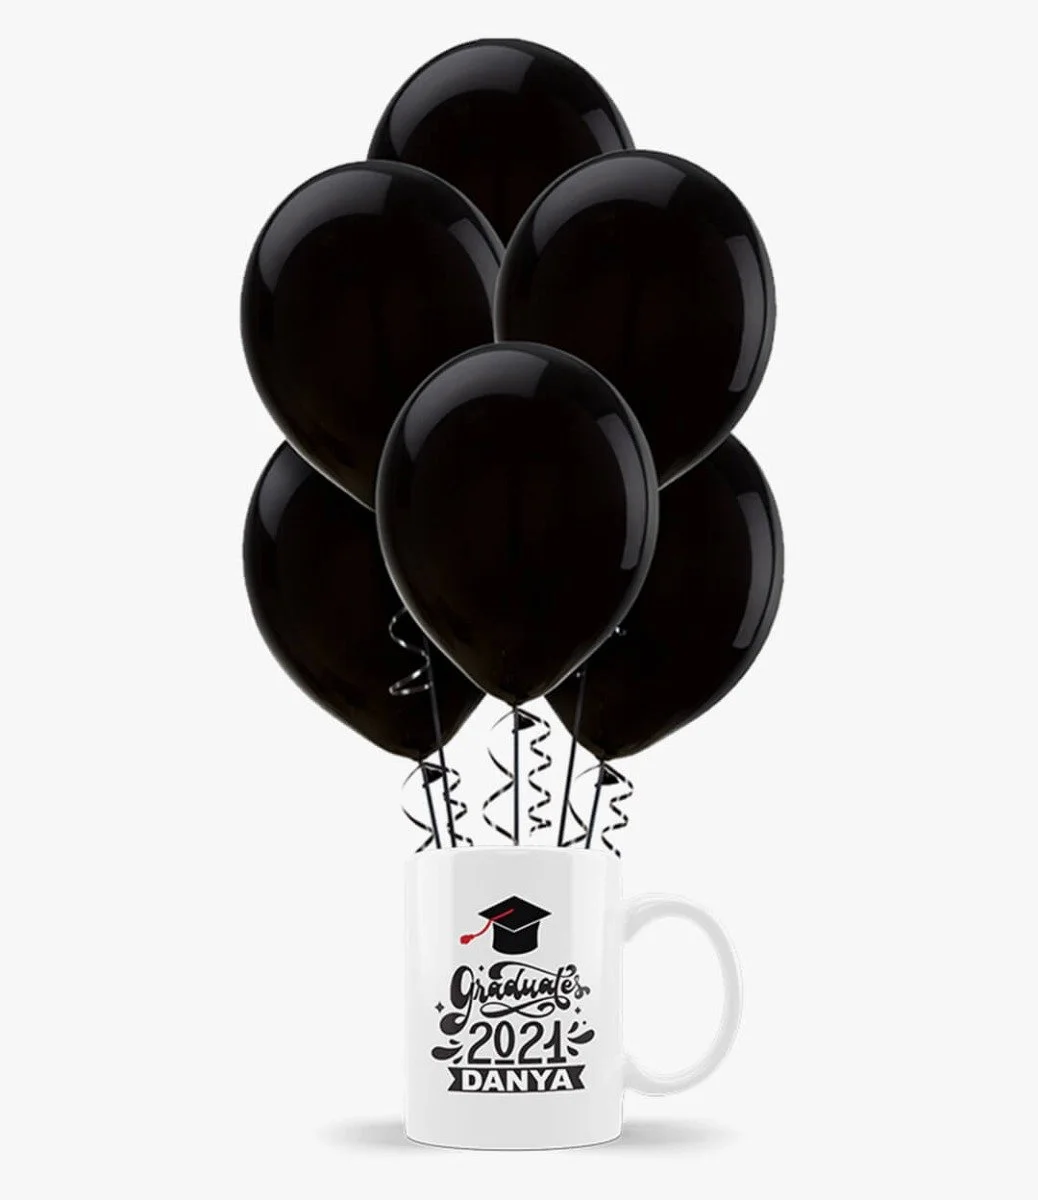 Mug and Black Latex Balloon Bundle